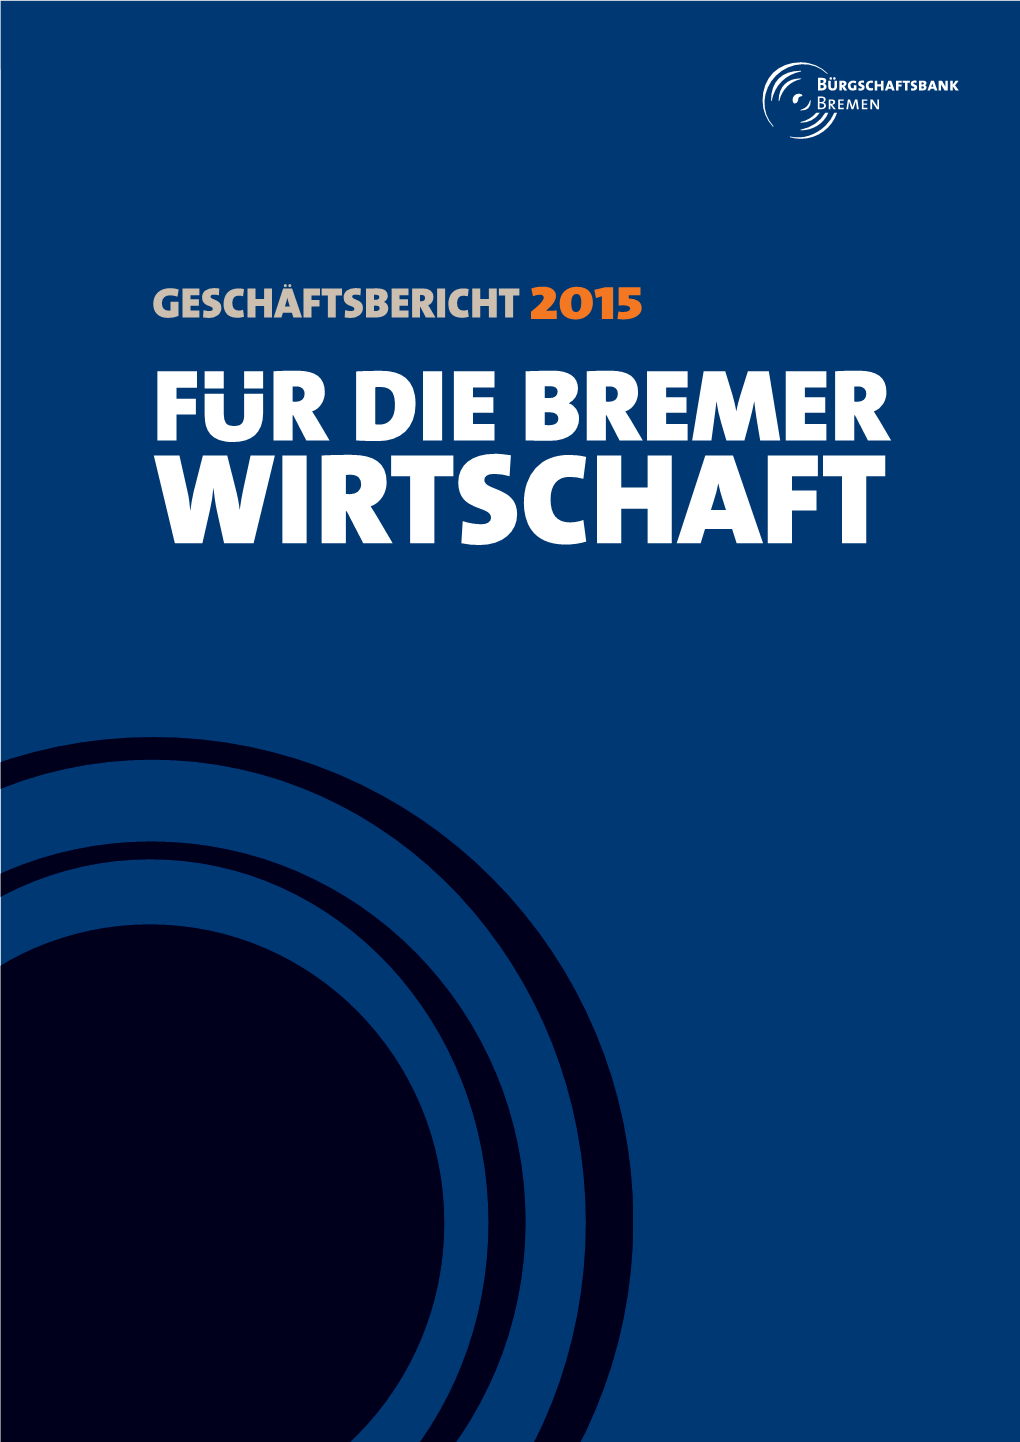 FUR DIE BREMER WIRTSCHAFT 2 | Geschäftsbericht 2015